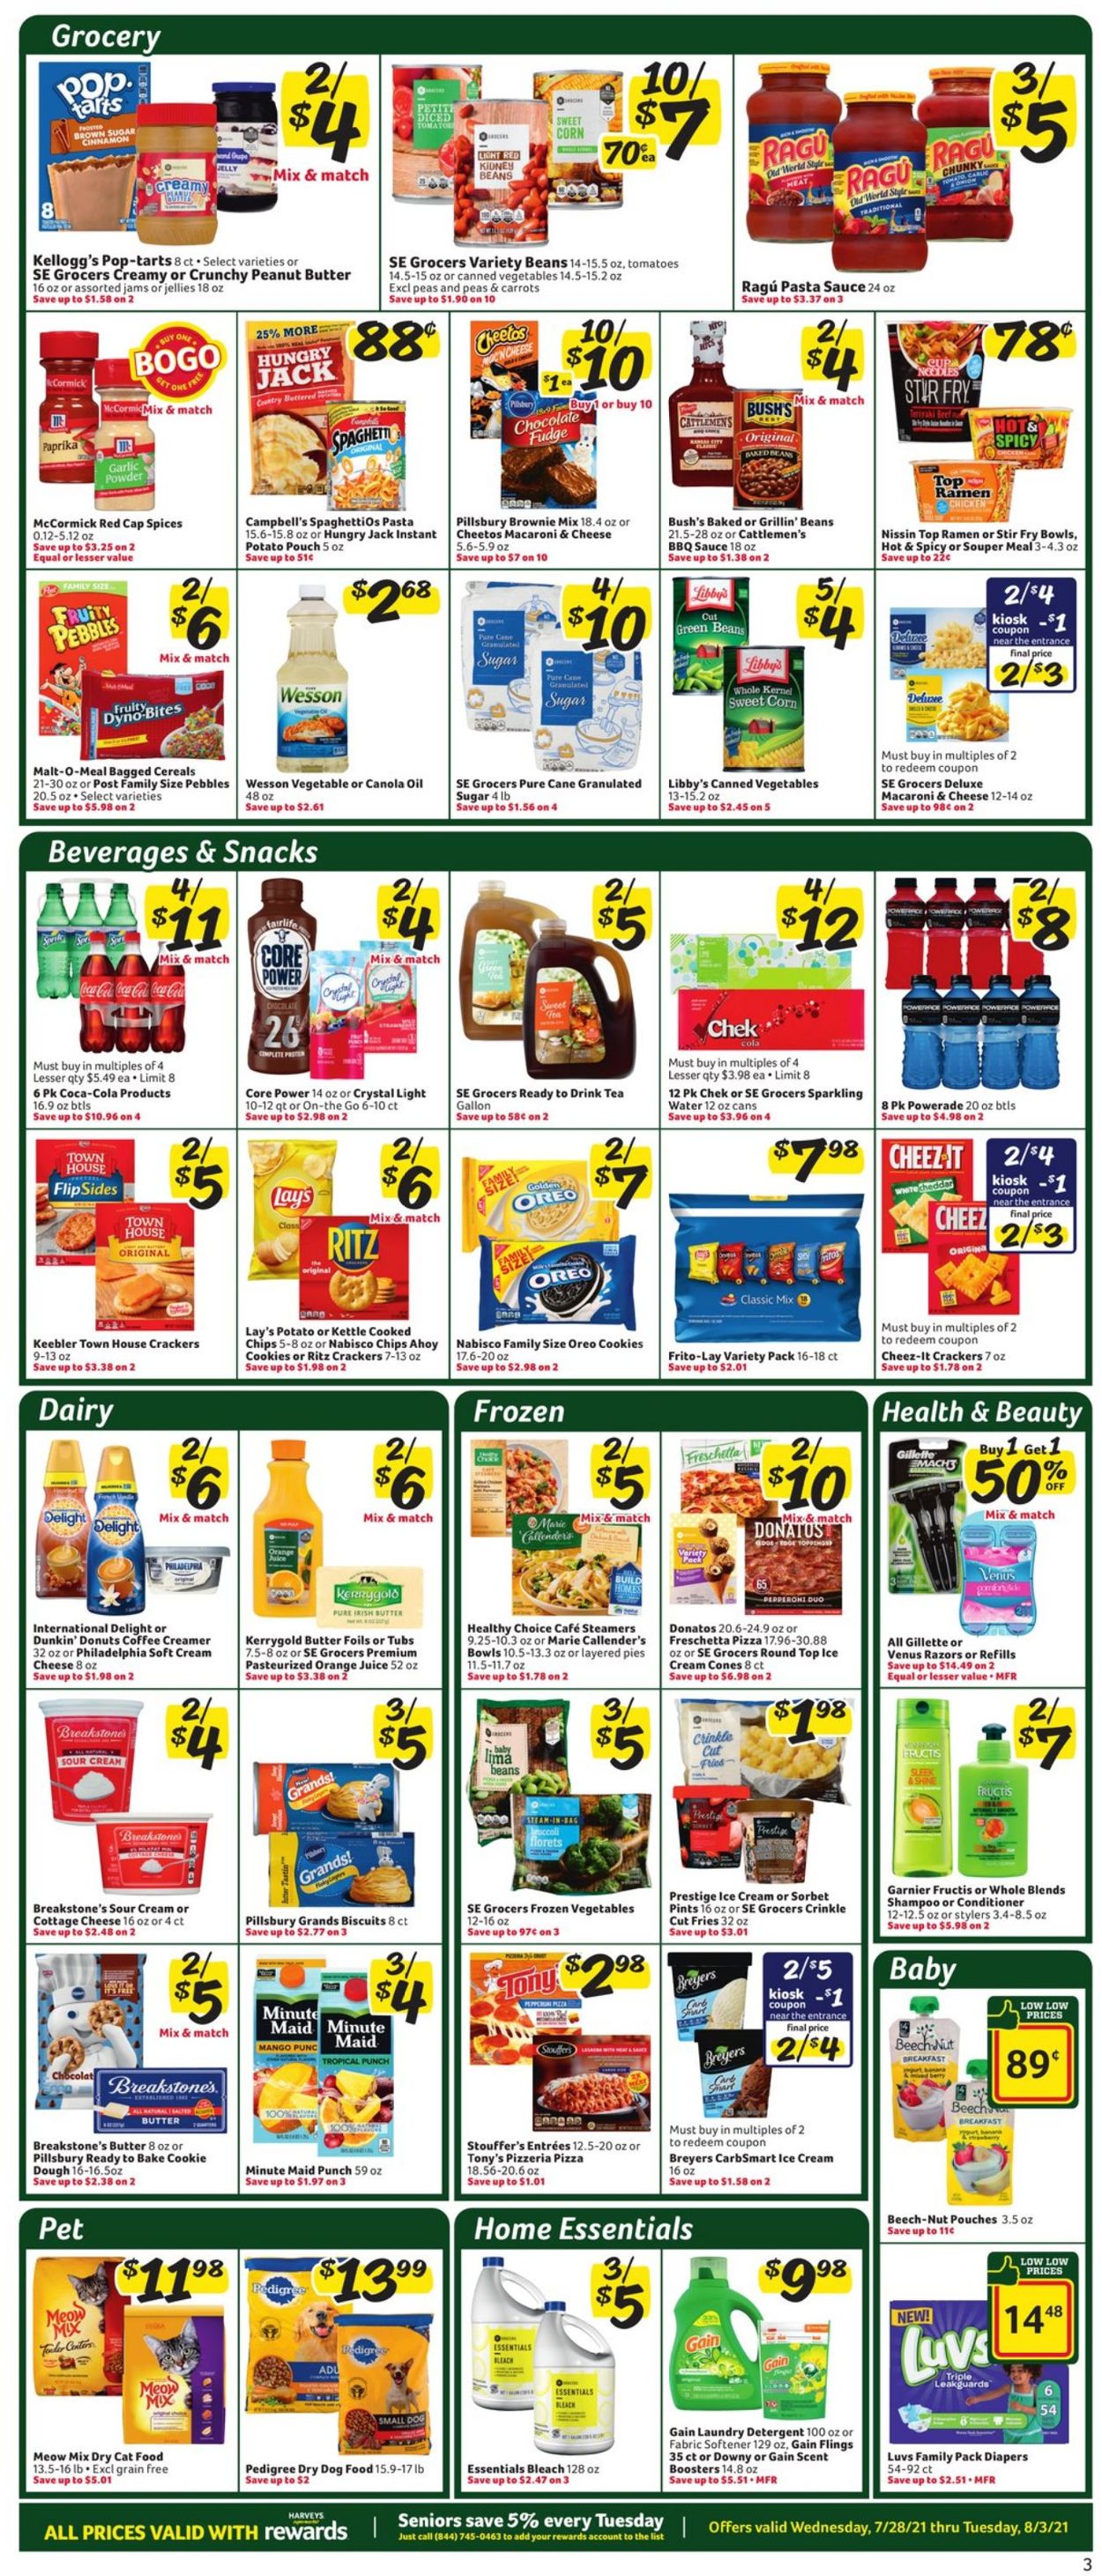 Catalogue Harveys Supermarket from 07/28/2021